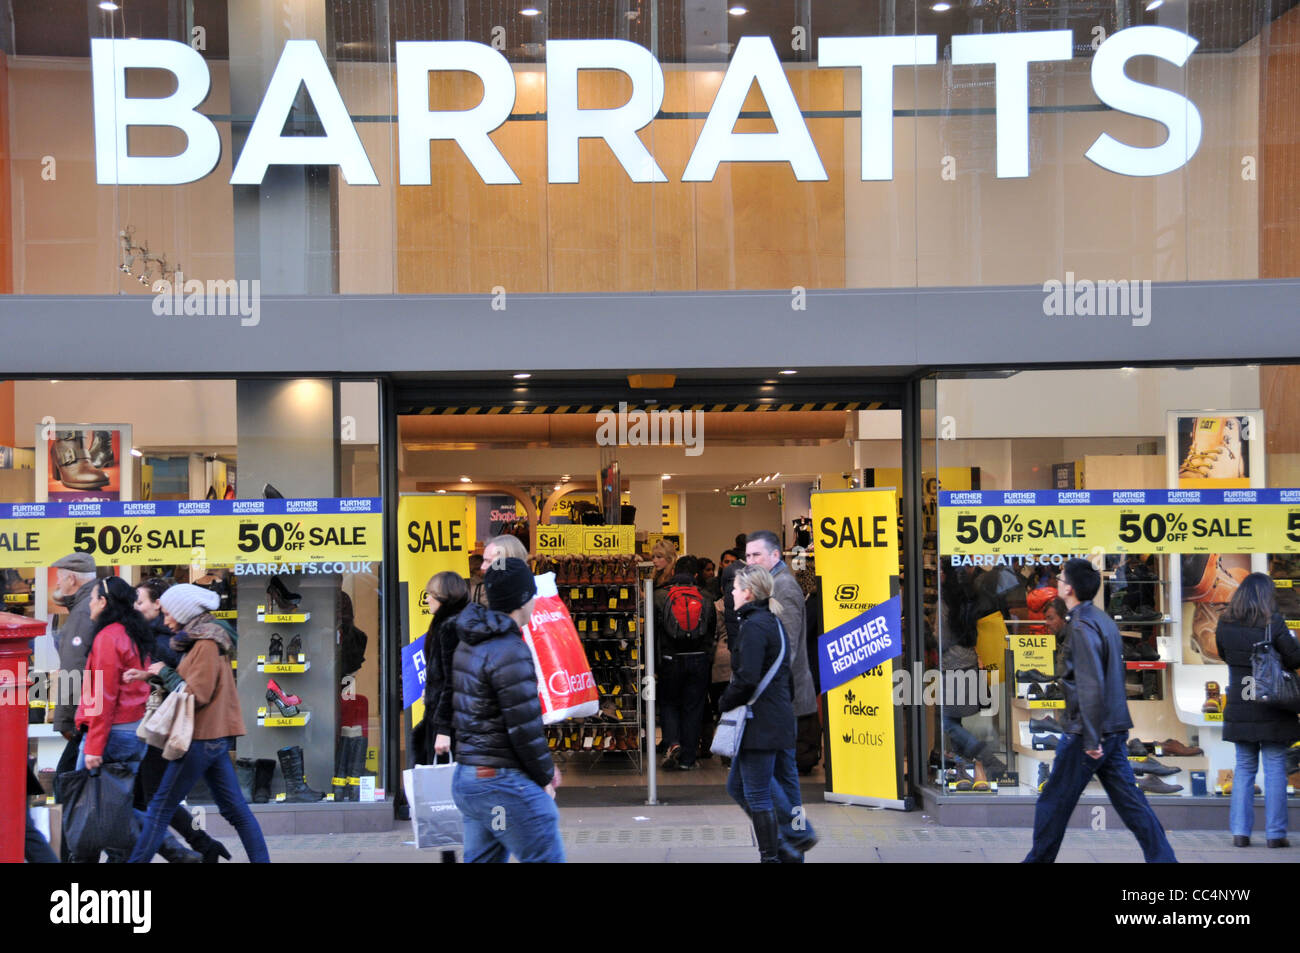 Barratts negozio di scarpe Oxford Street amministrazione recessione chiusura high street a catena del settore retail vendita Foto Stock